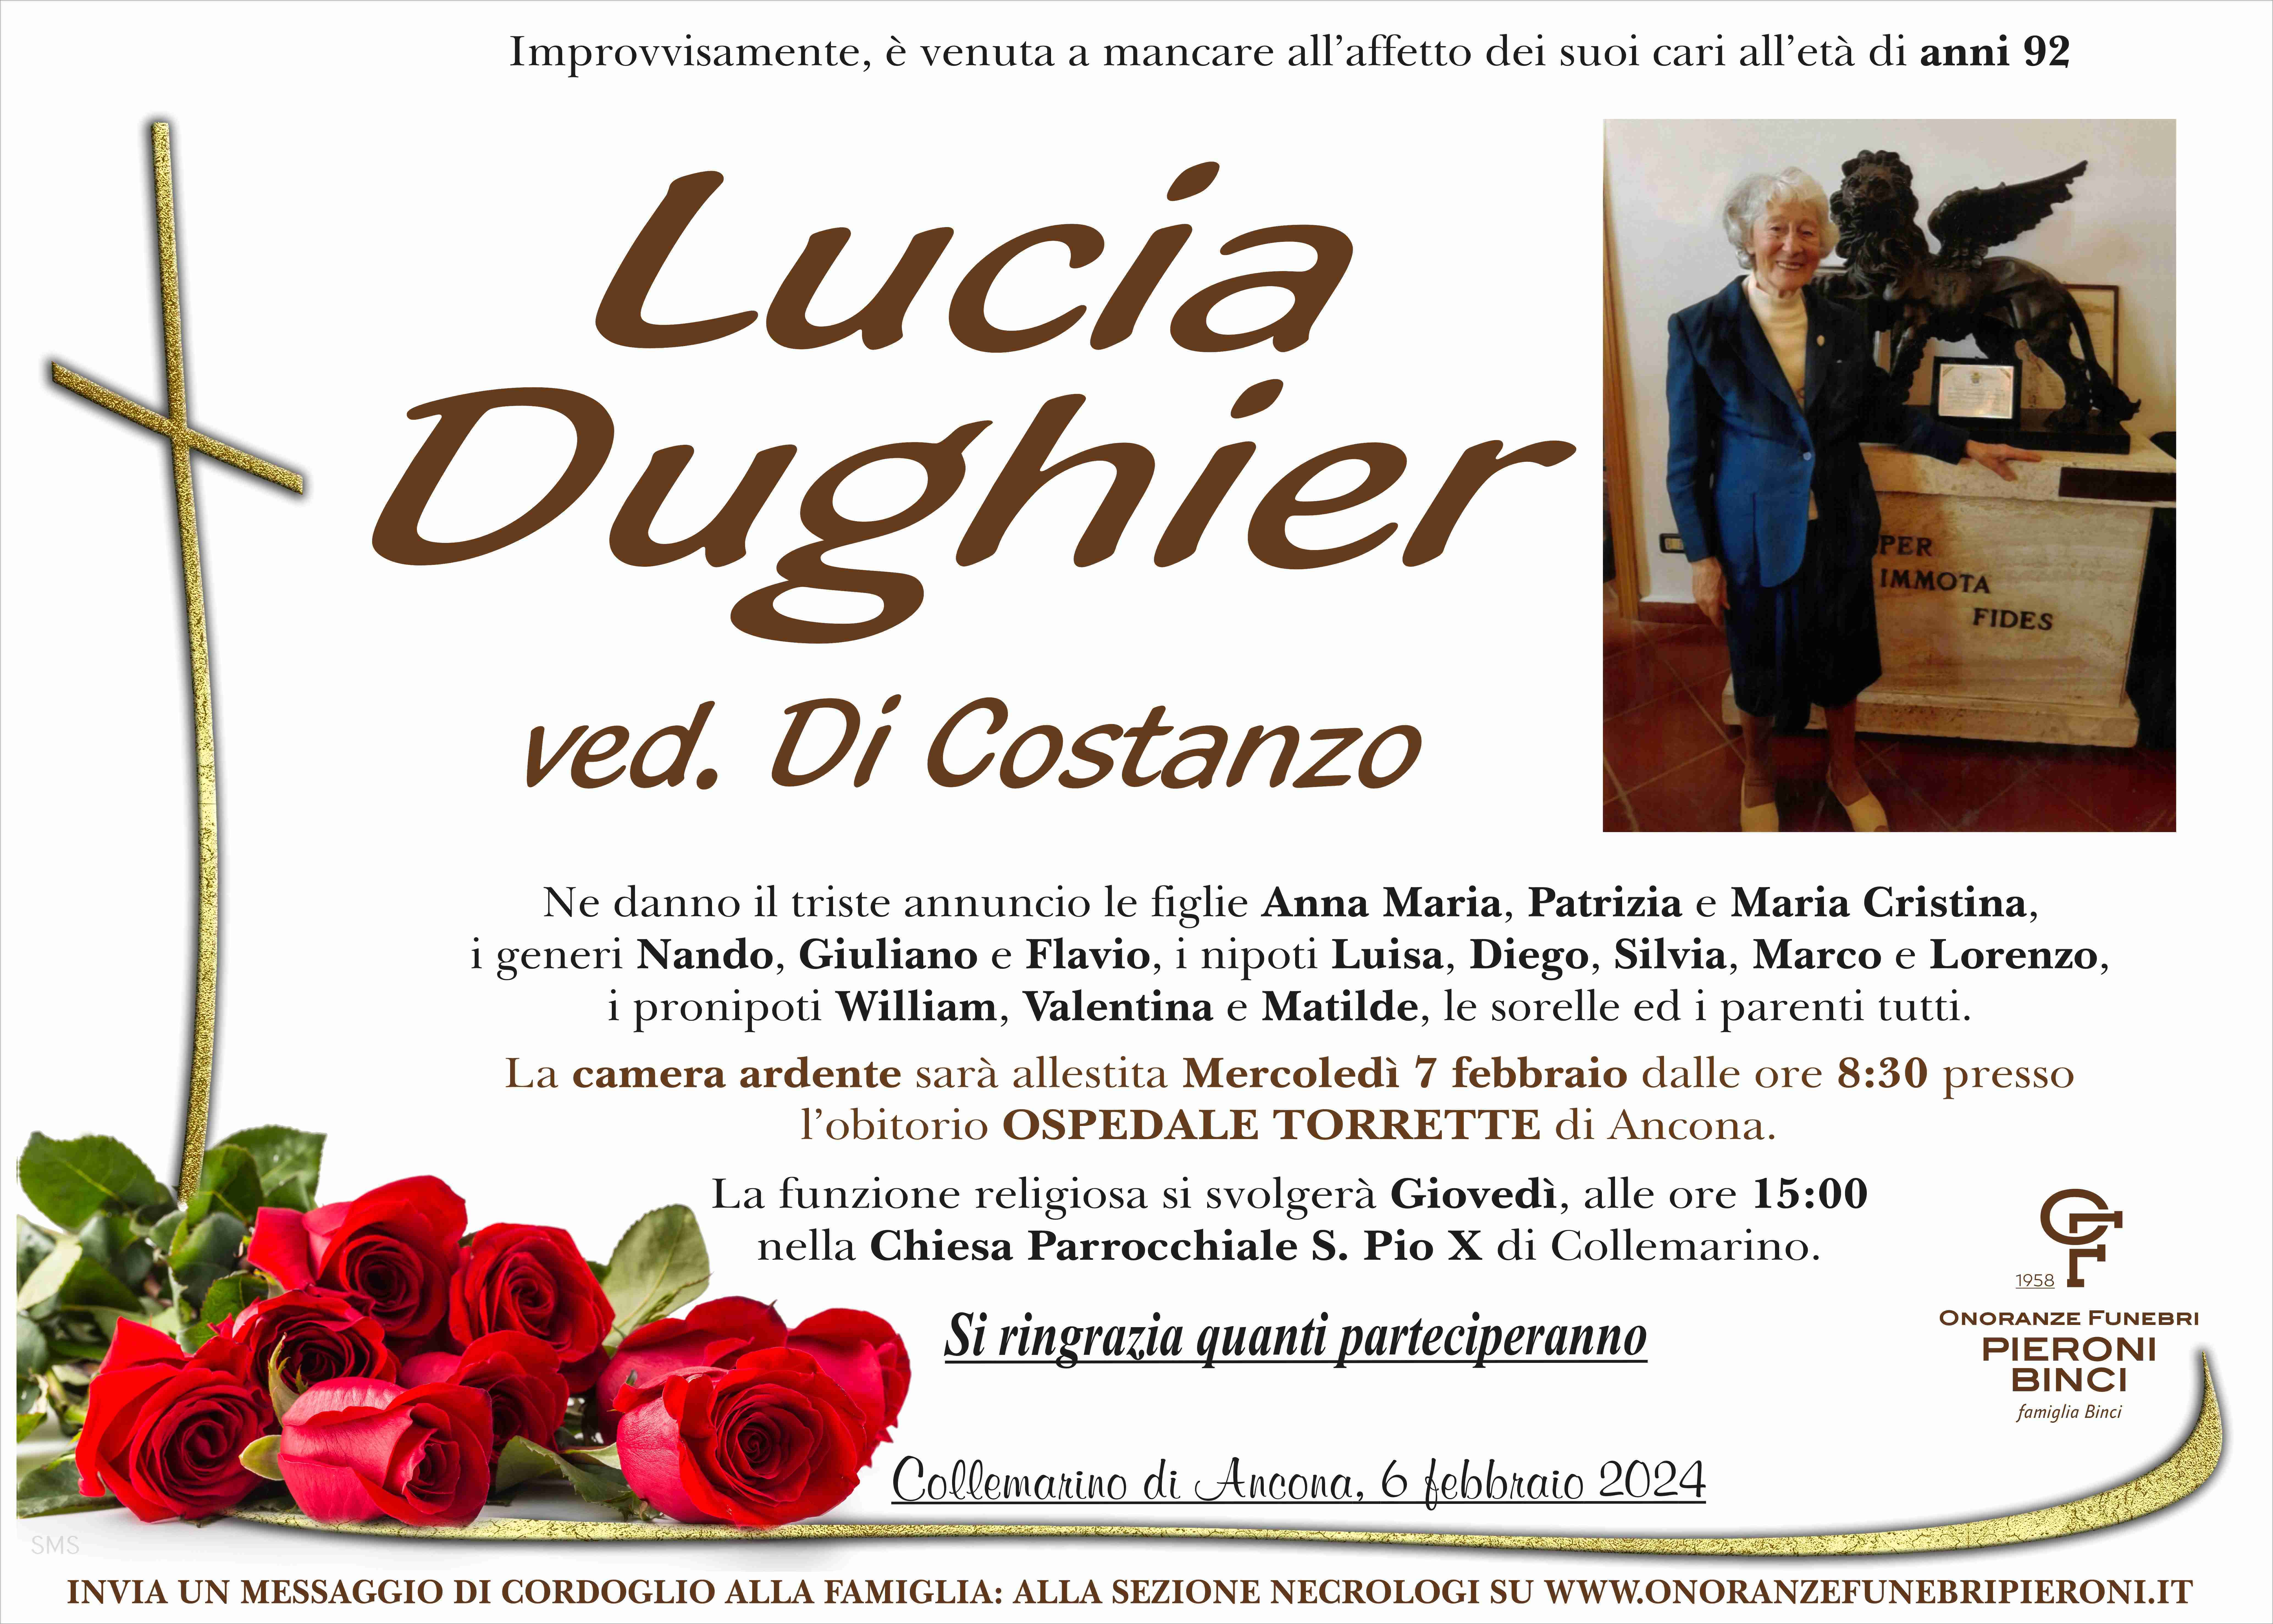 Lucia Dughier